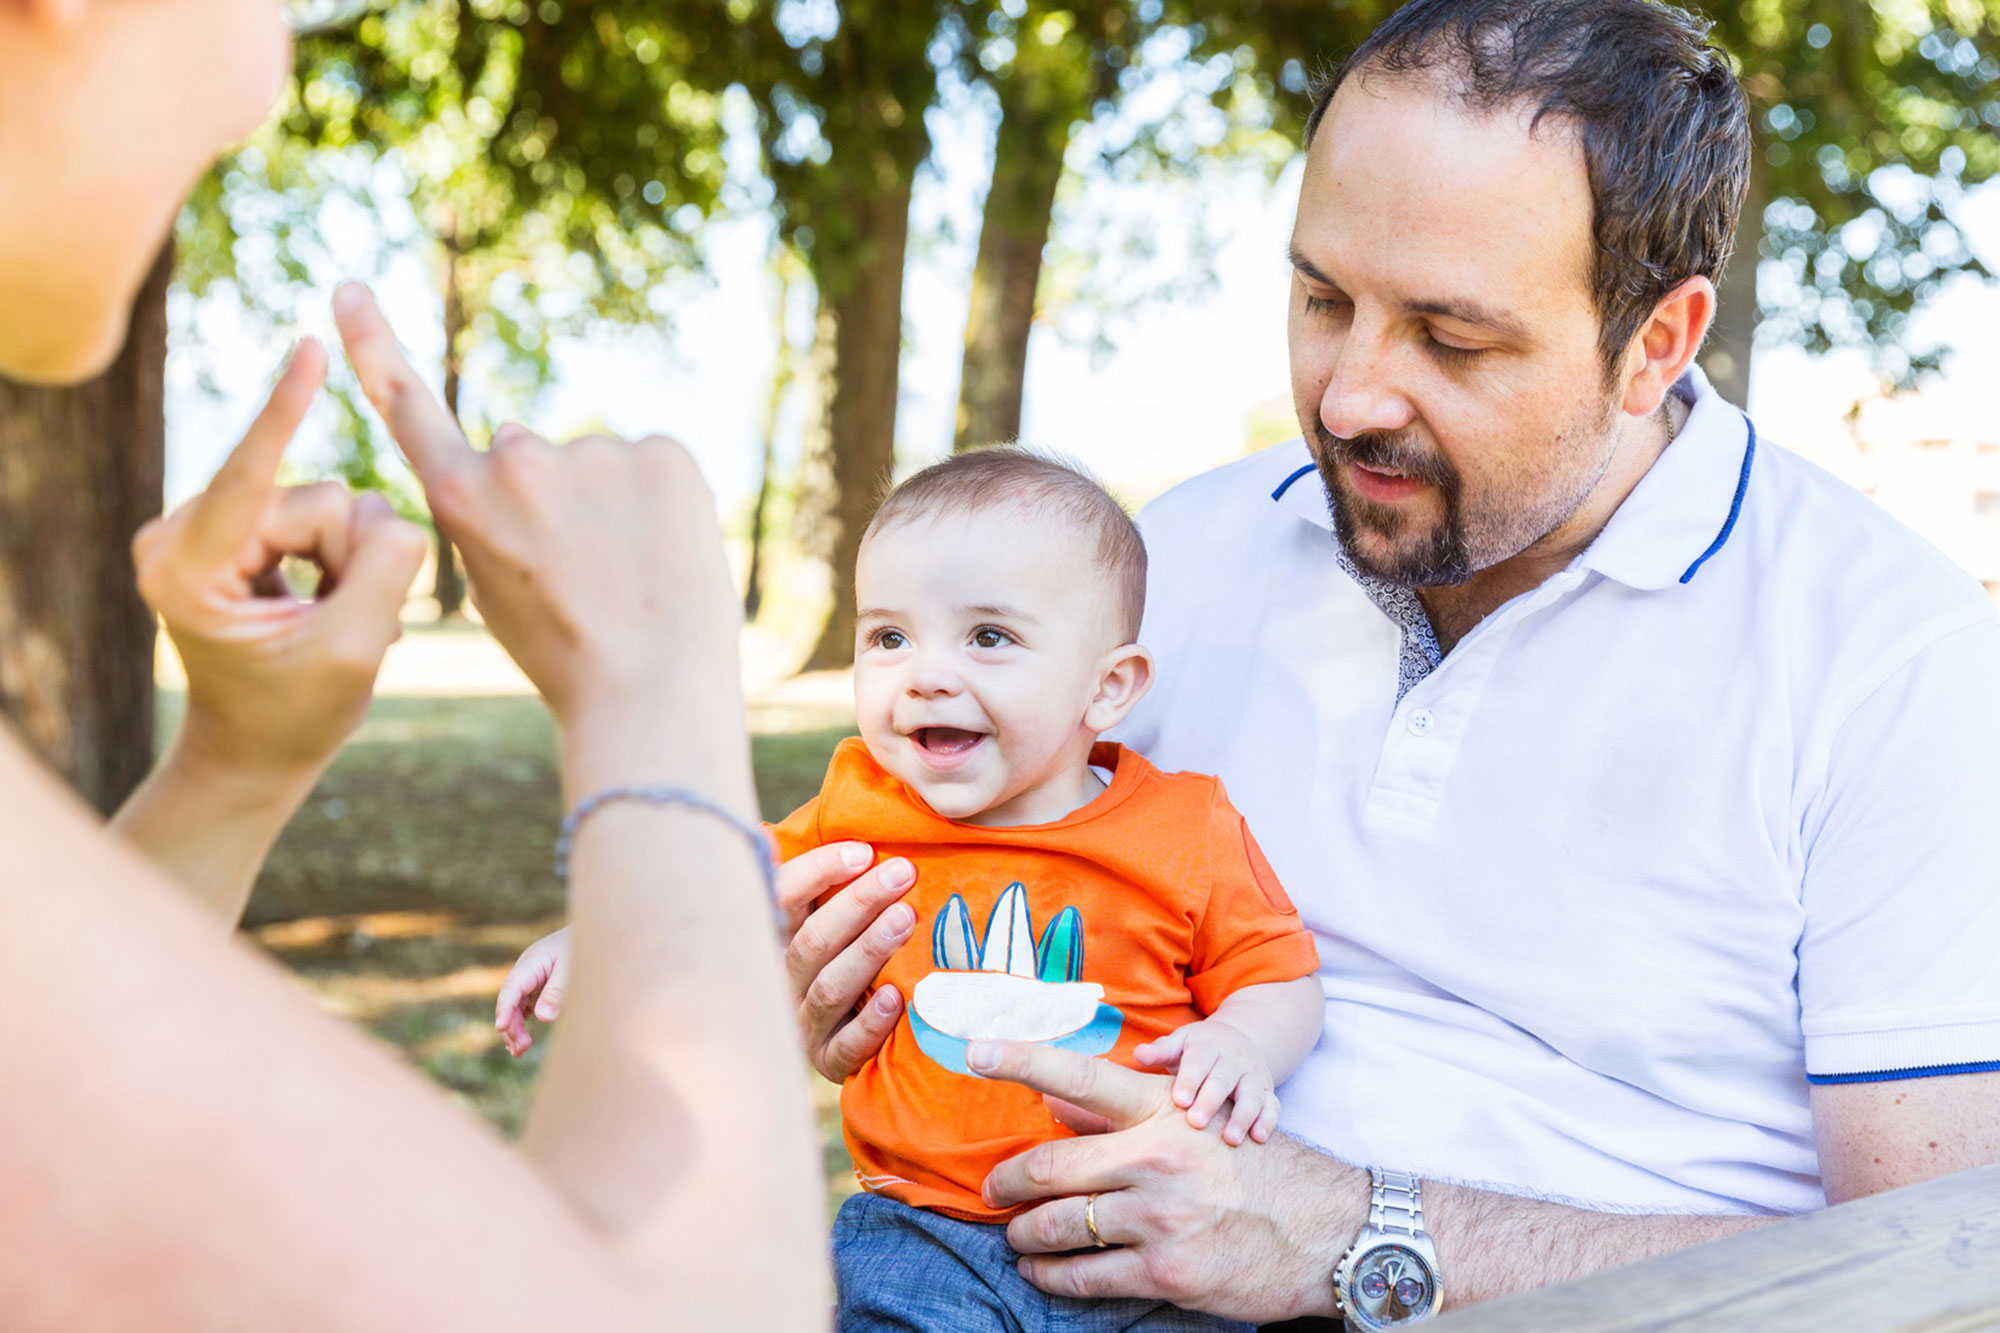 La imagen muestra a los padres usando el lenguaje de señas para comunicarse con su bebé feliz.